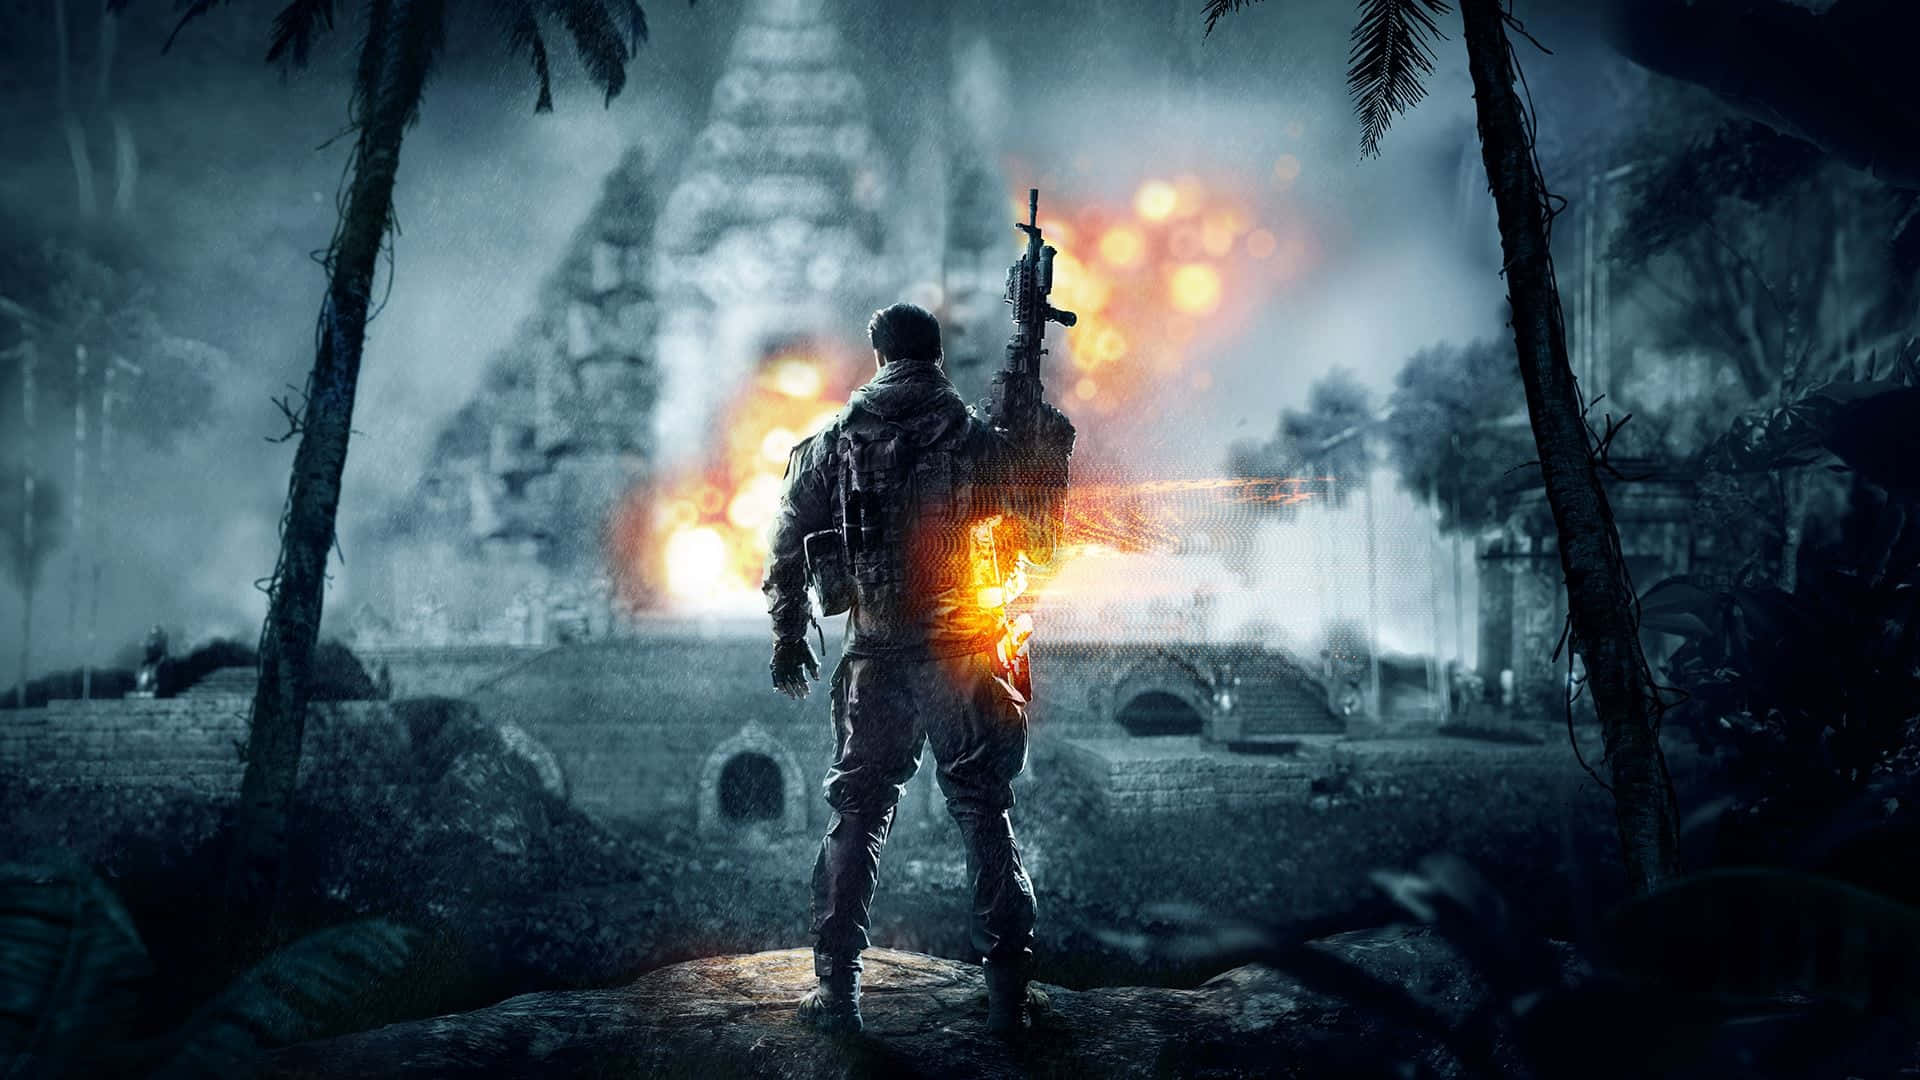 Battlefield 4 Wallpapers Download